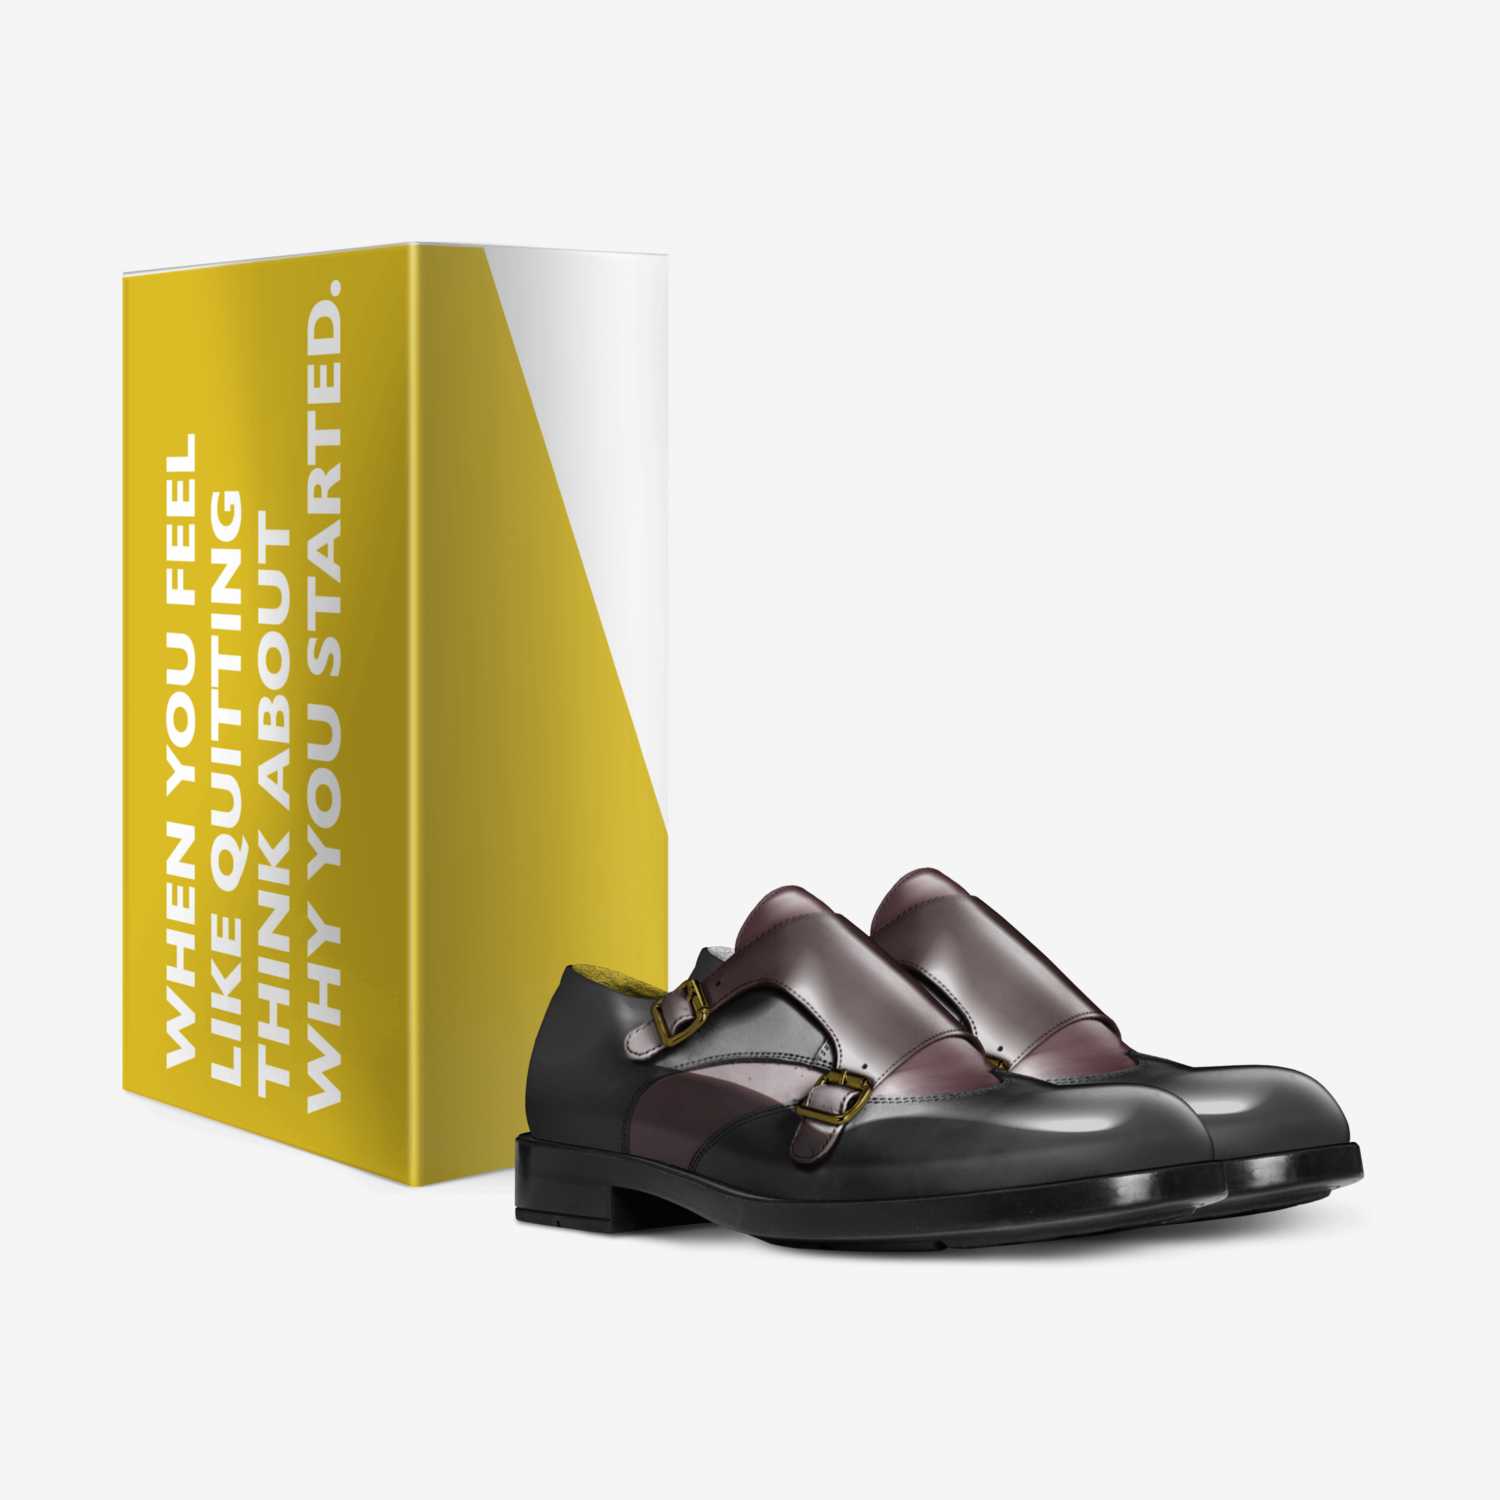 Trojan-Kinka T Kix custom made in Italy shoes by Kinka T Kix | Box view